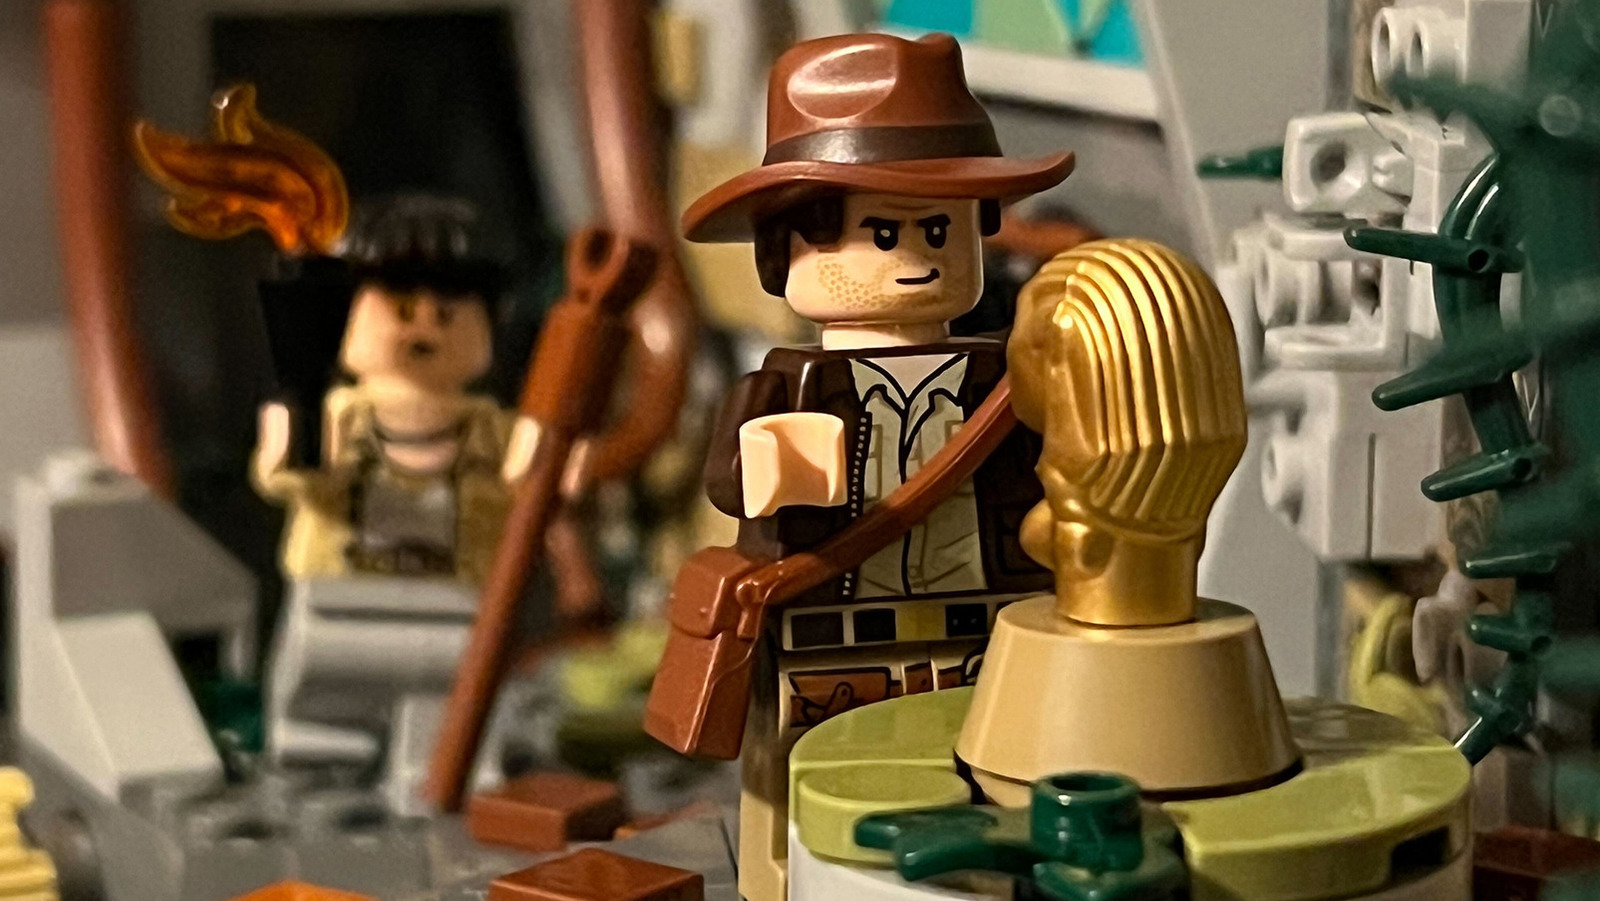 LEGO Indiana Jones is back – Bricking Around